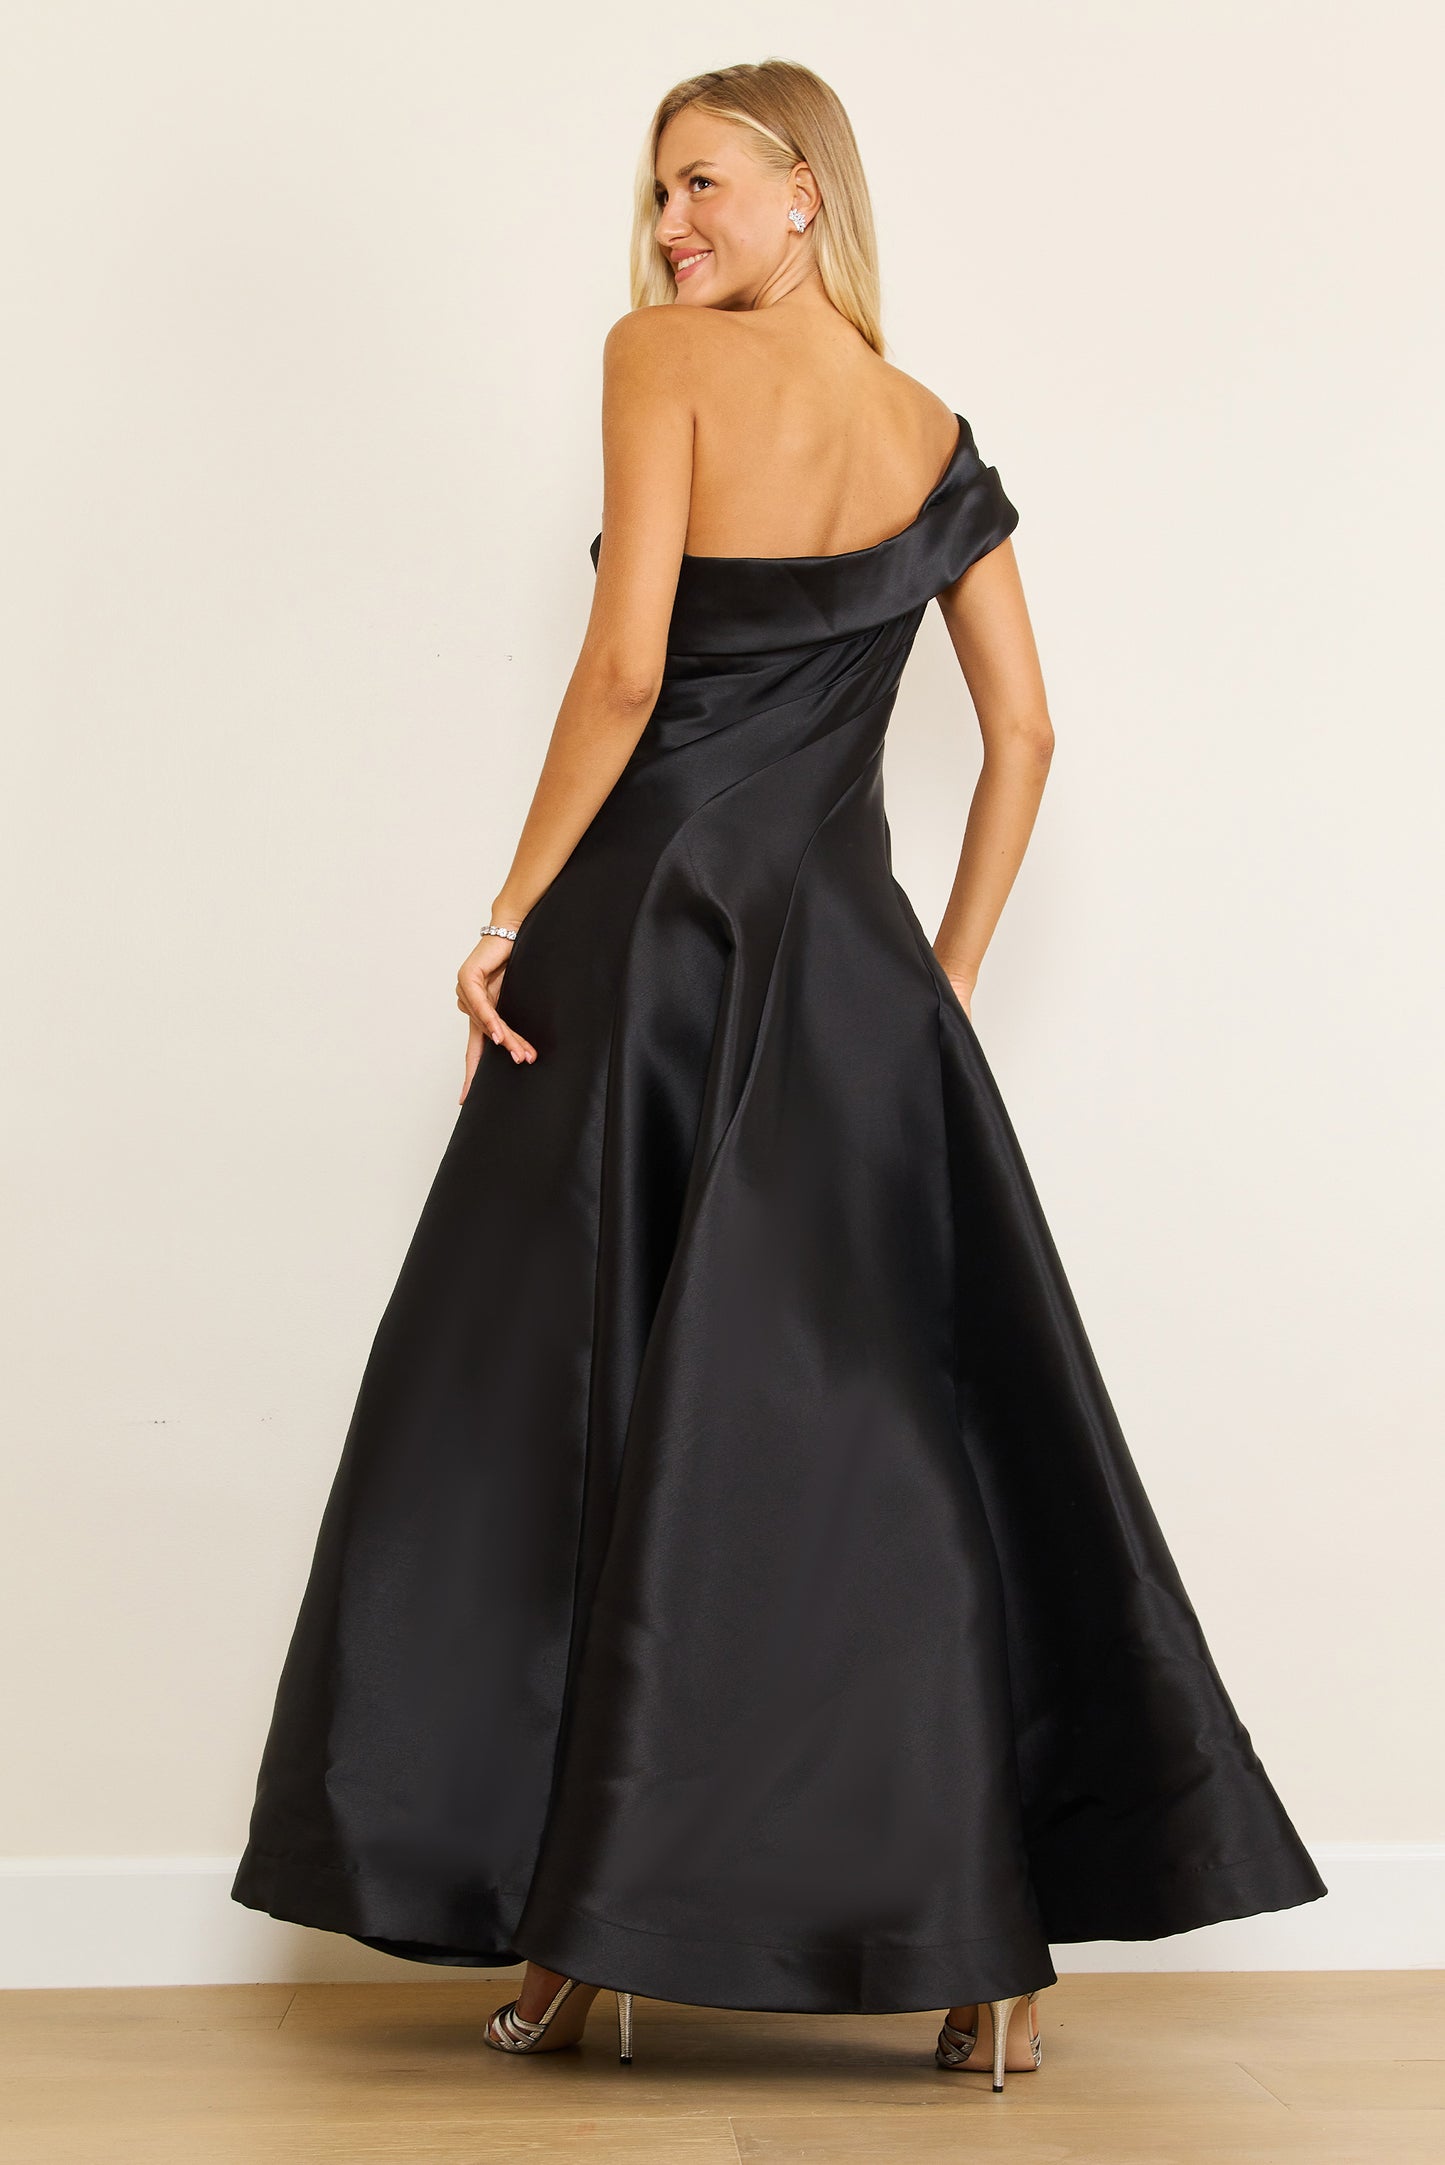 Formal Dresses One Shoulder Long Formal Ball Gown Evening Dress Black